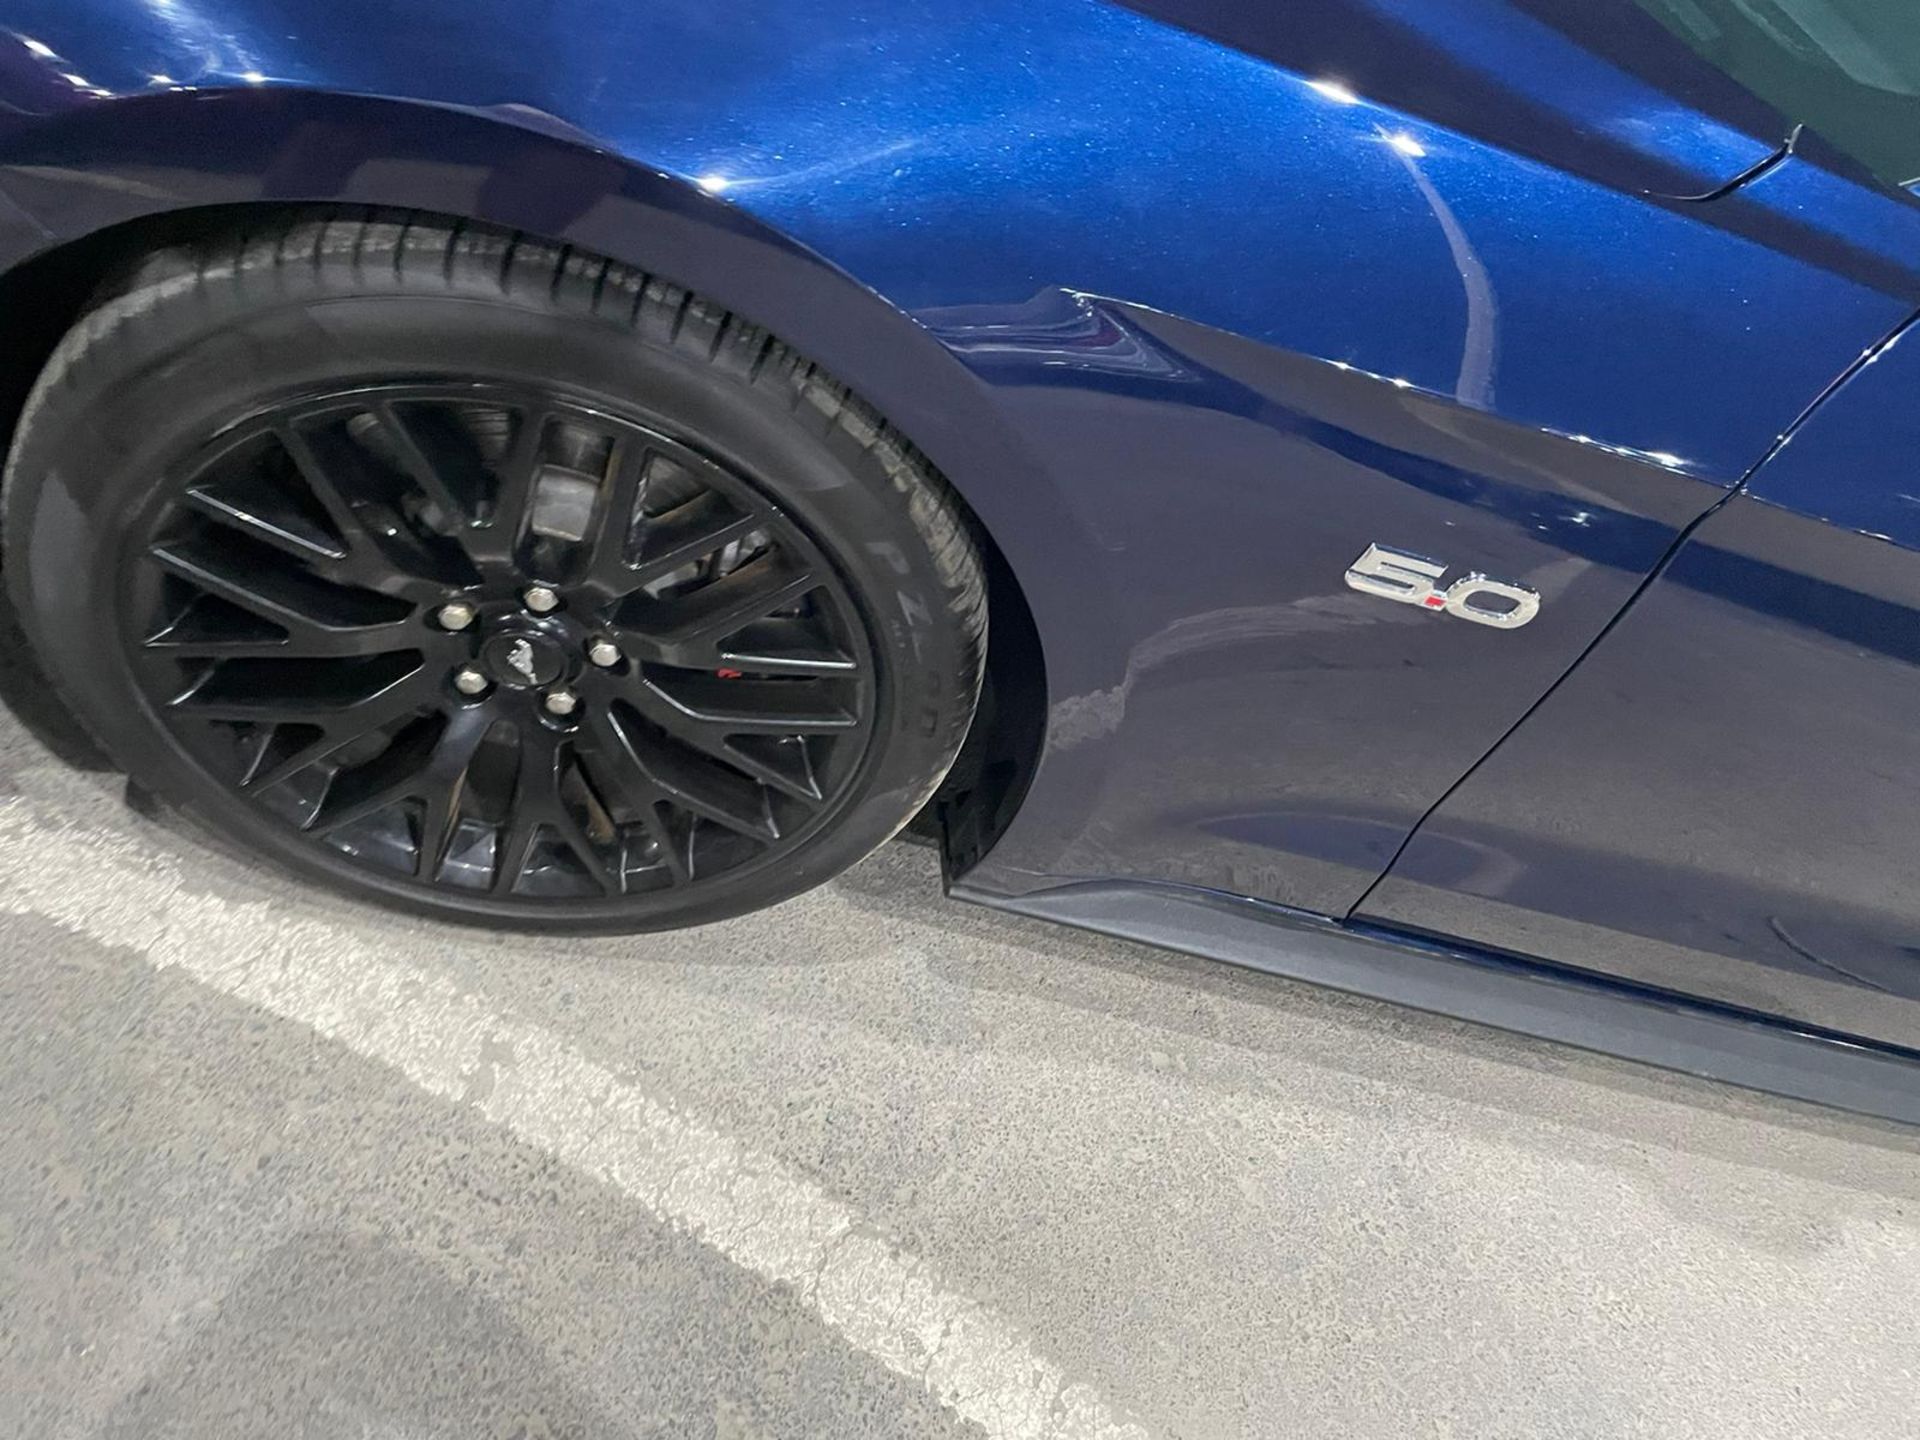 2019 mustang gt 5.0 V8 Shelby body kit 15,000 km. Uk mid APRIL With nova *PLUS VAT* - Image 4 of 9